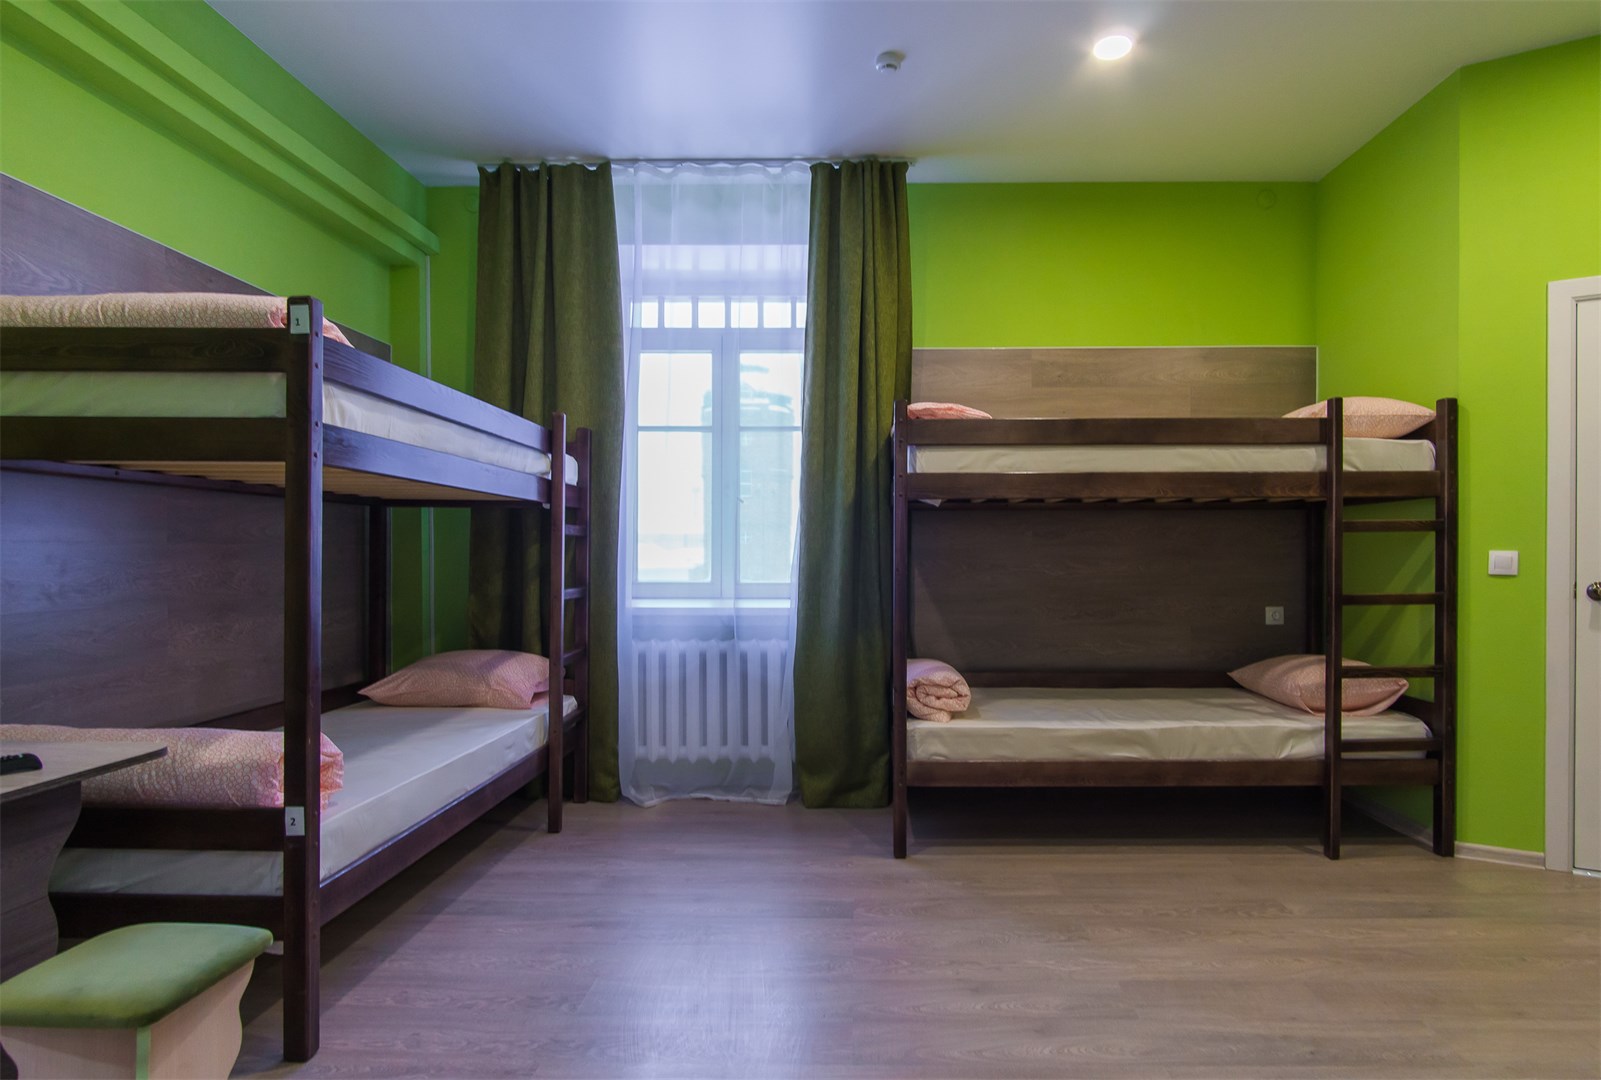 Хостелы в Барнауле и мини-гостиницы — это одно и то же?